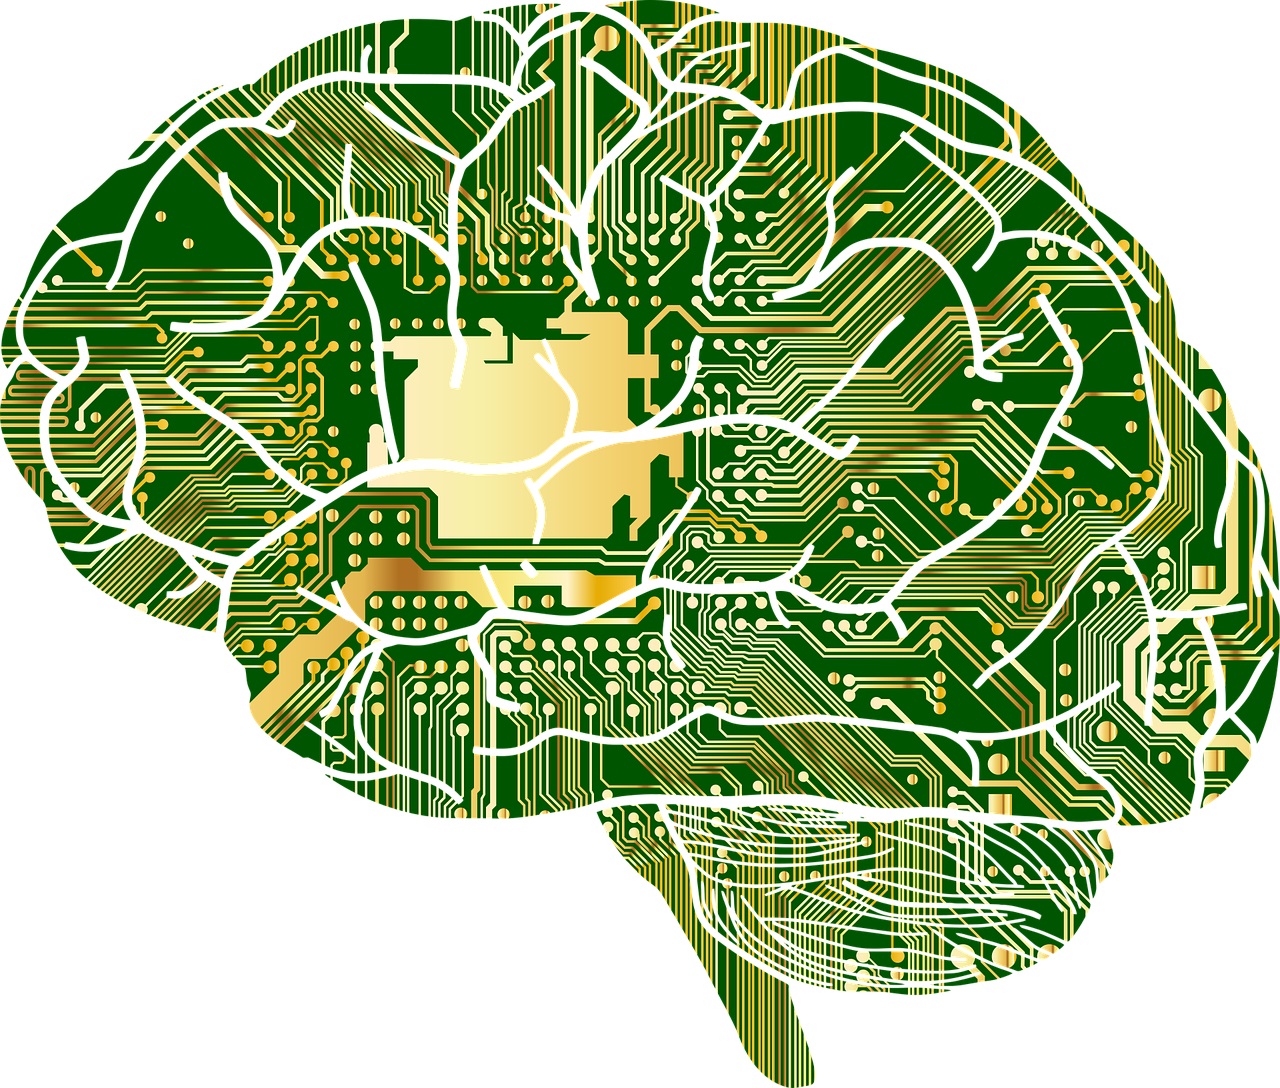 Confirmado: el cerebro humano y la inteligencia artificial funcionan de manera paralela